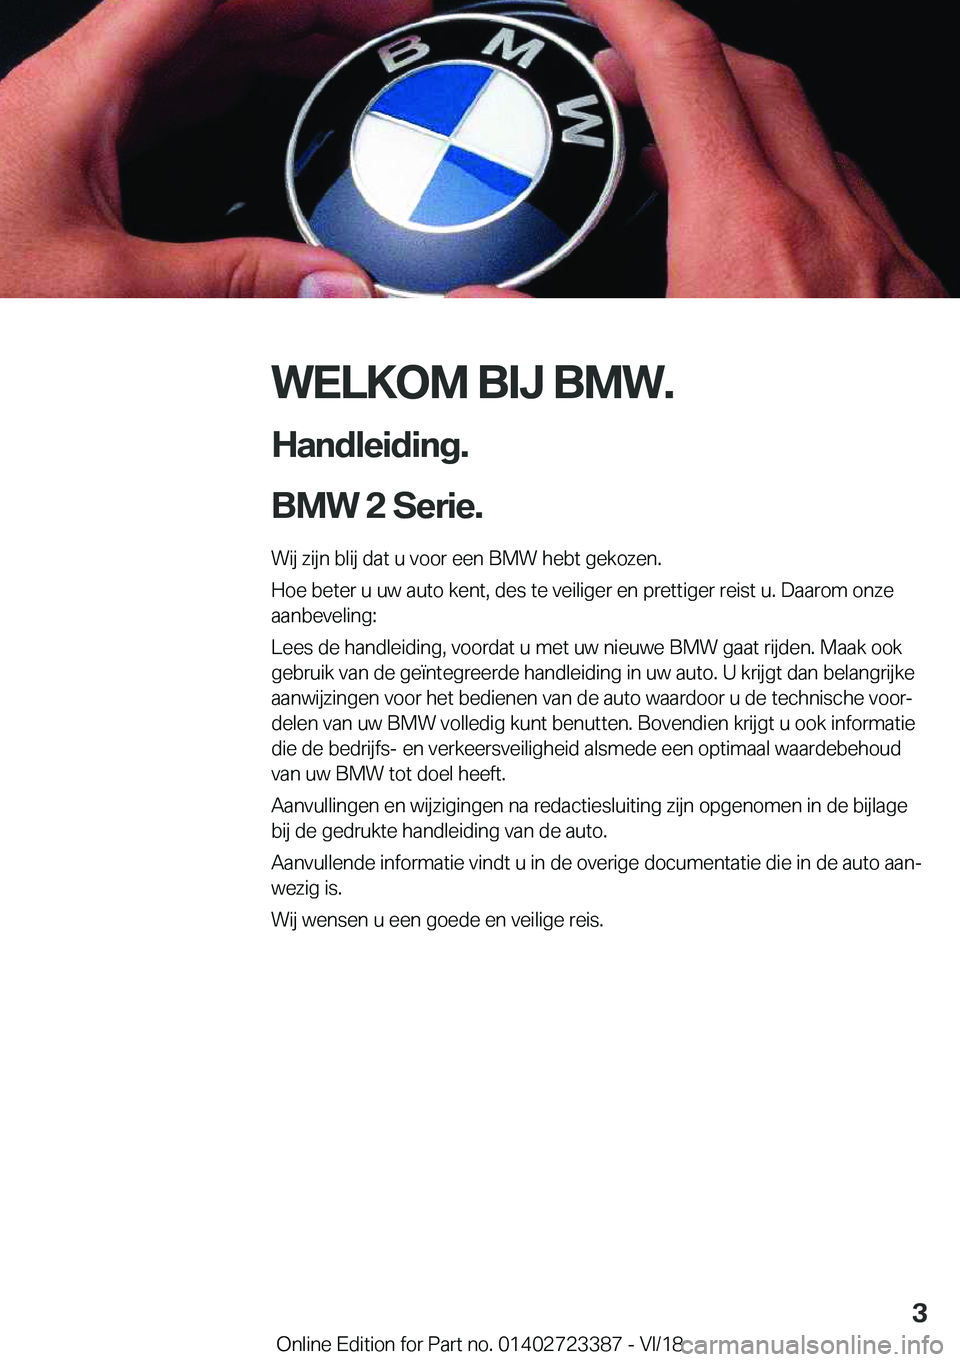 BMW 2 SERIES COUPE 2019  Instructieboekjes (in Dutch) �W�E�L�K�O�M��B�I�J��B�M�W�.
�H�a�n�d�l�e�i�d�i�n�g�.
�B�M�W��2��S�e�r�i�e�.� �W�i�j��z�i�j�n��b�l�i�j��d�a�t��u��v�o�o�r��e�e�n��B�M�W��h�e�b�t��g�e�k�o�z�e�n�.
�H�o�e��b�e�t�e�r��u�